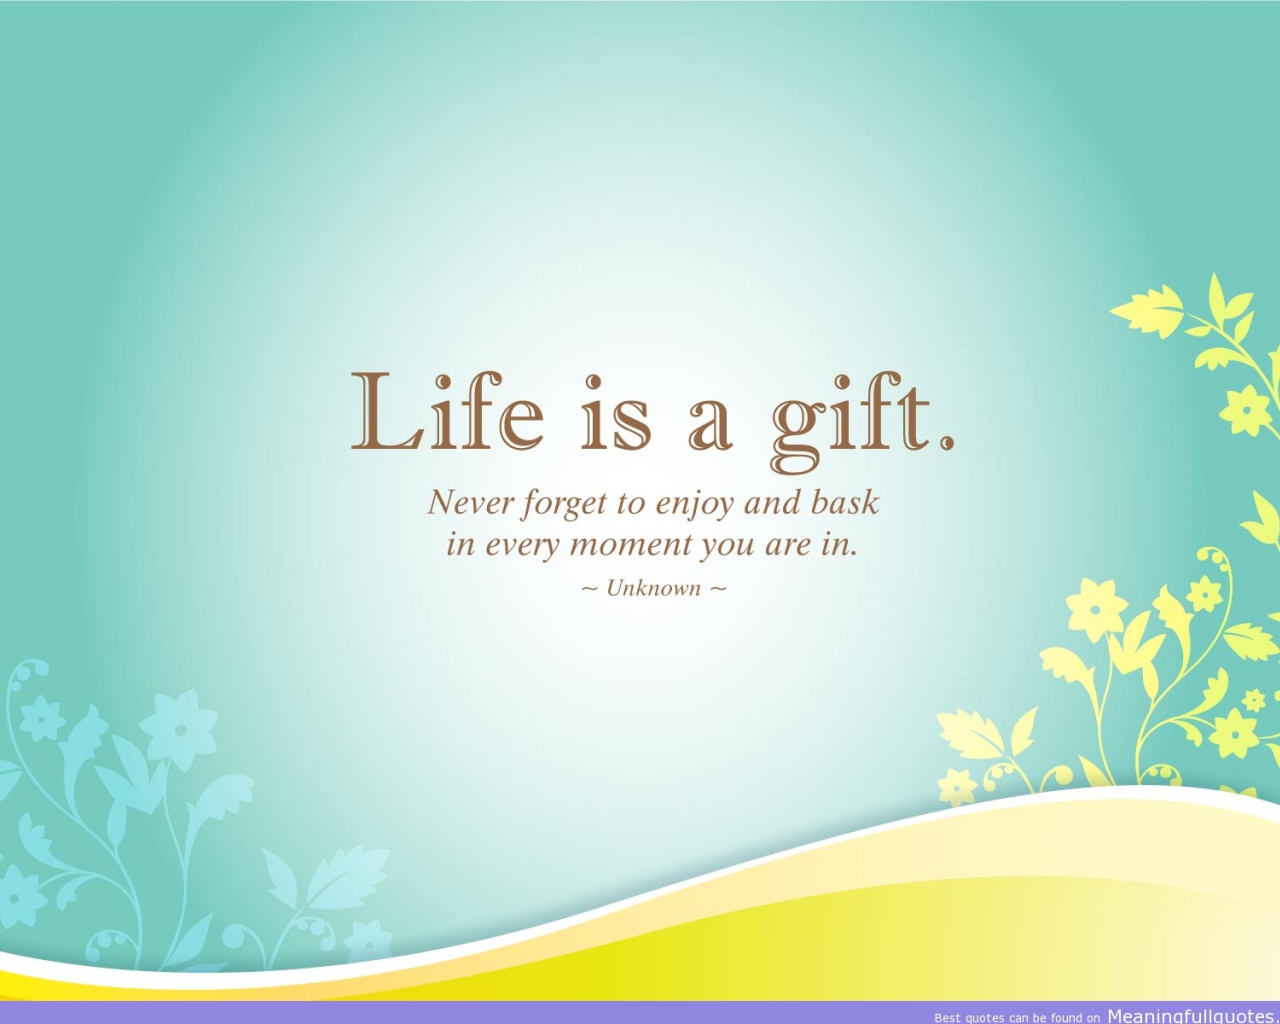 Жизнь - это дар